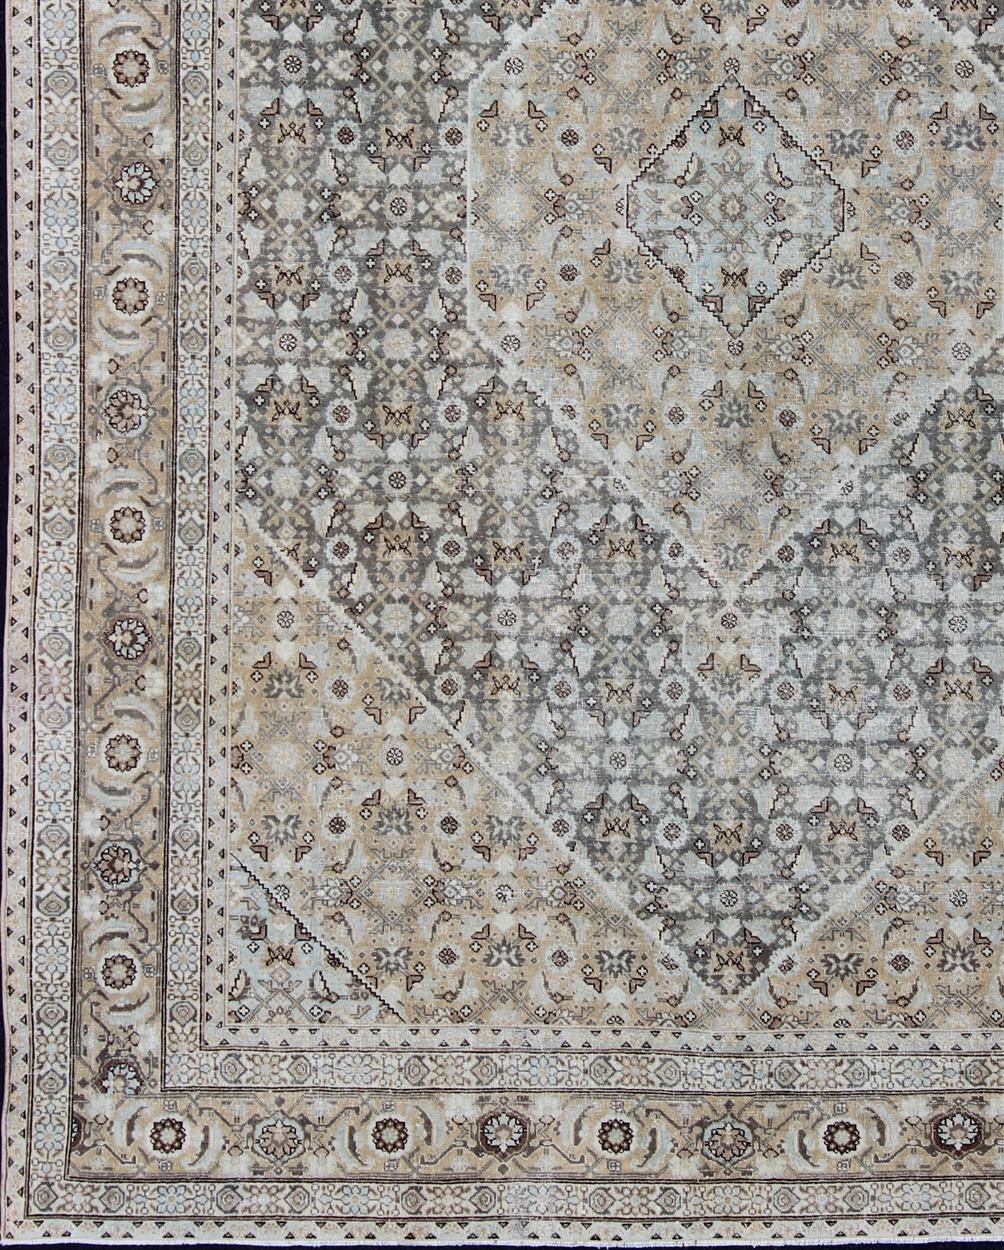 Tapis persan ancien de Tabriz avec un design géométrique en losange dans des tons clairs, vert gris, gris, taupe, bleu clair, tan et brun Tapis persan géométrique de Tabriz, Keivan Woven Arts/ tapis/ SUS-1908-369, pays d'origine / type : Iran /